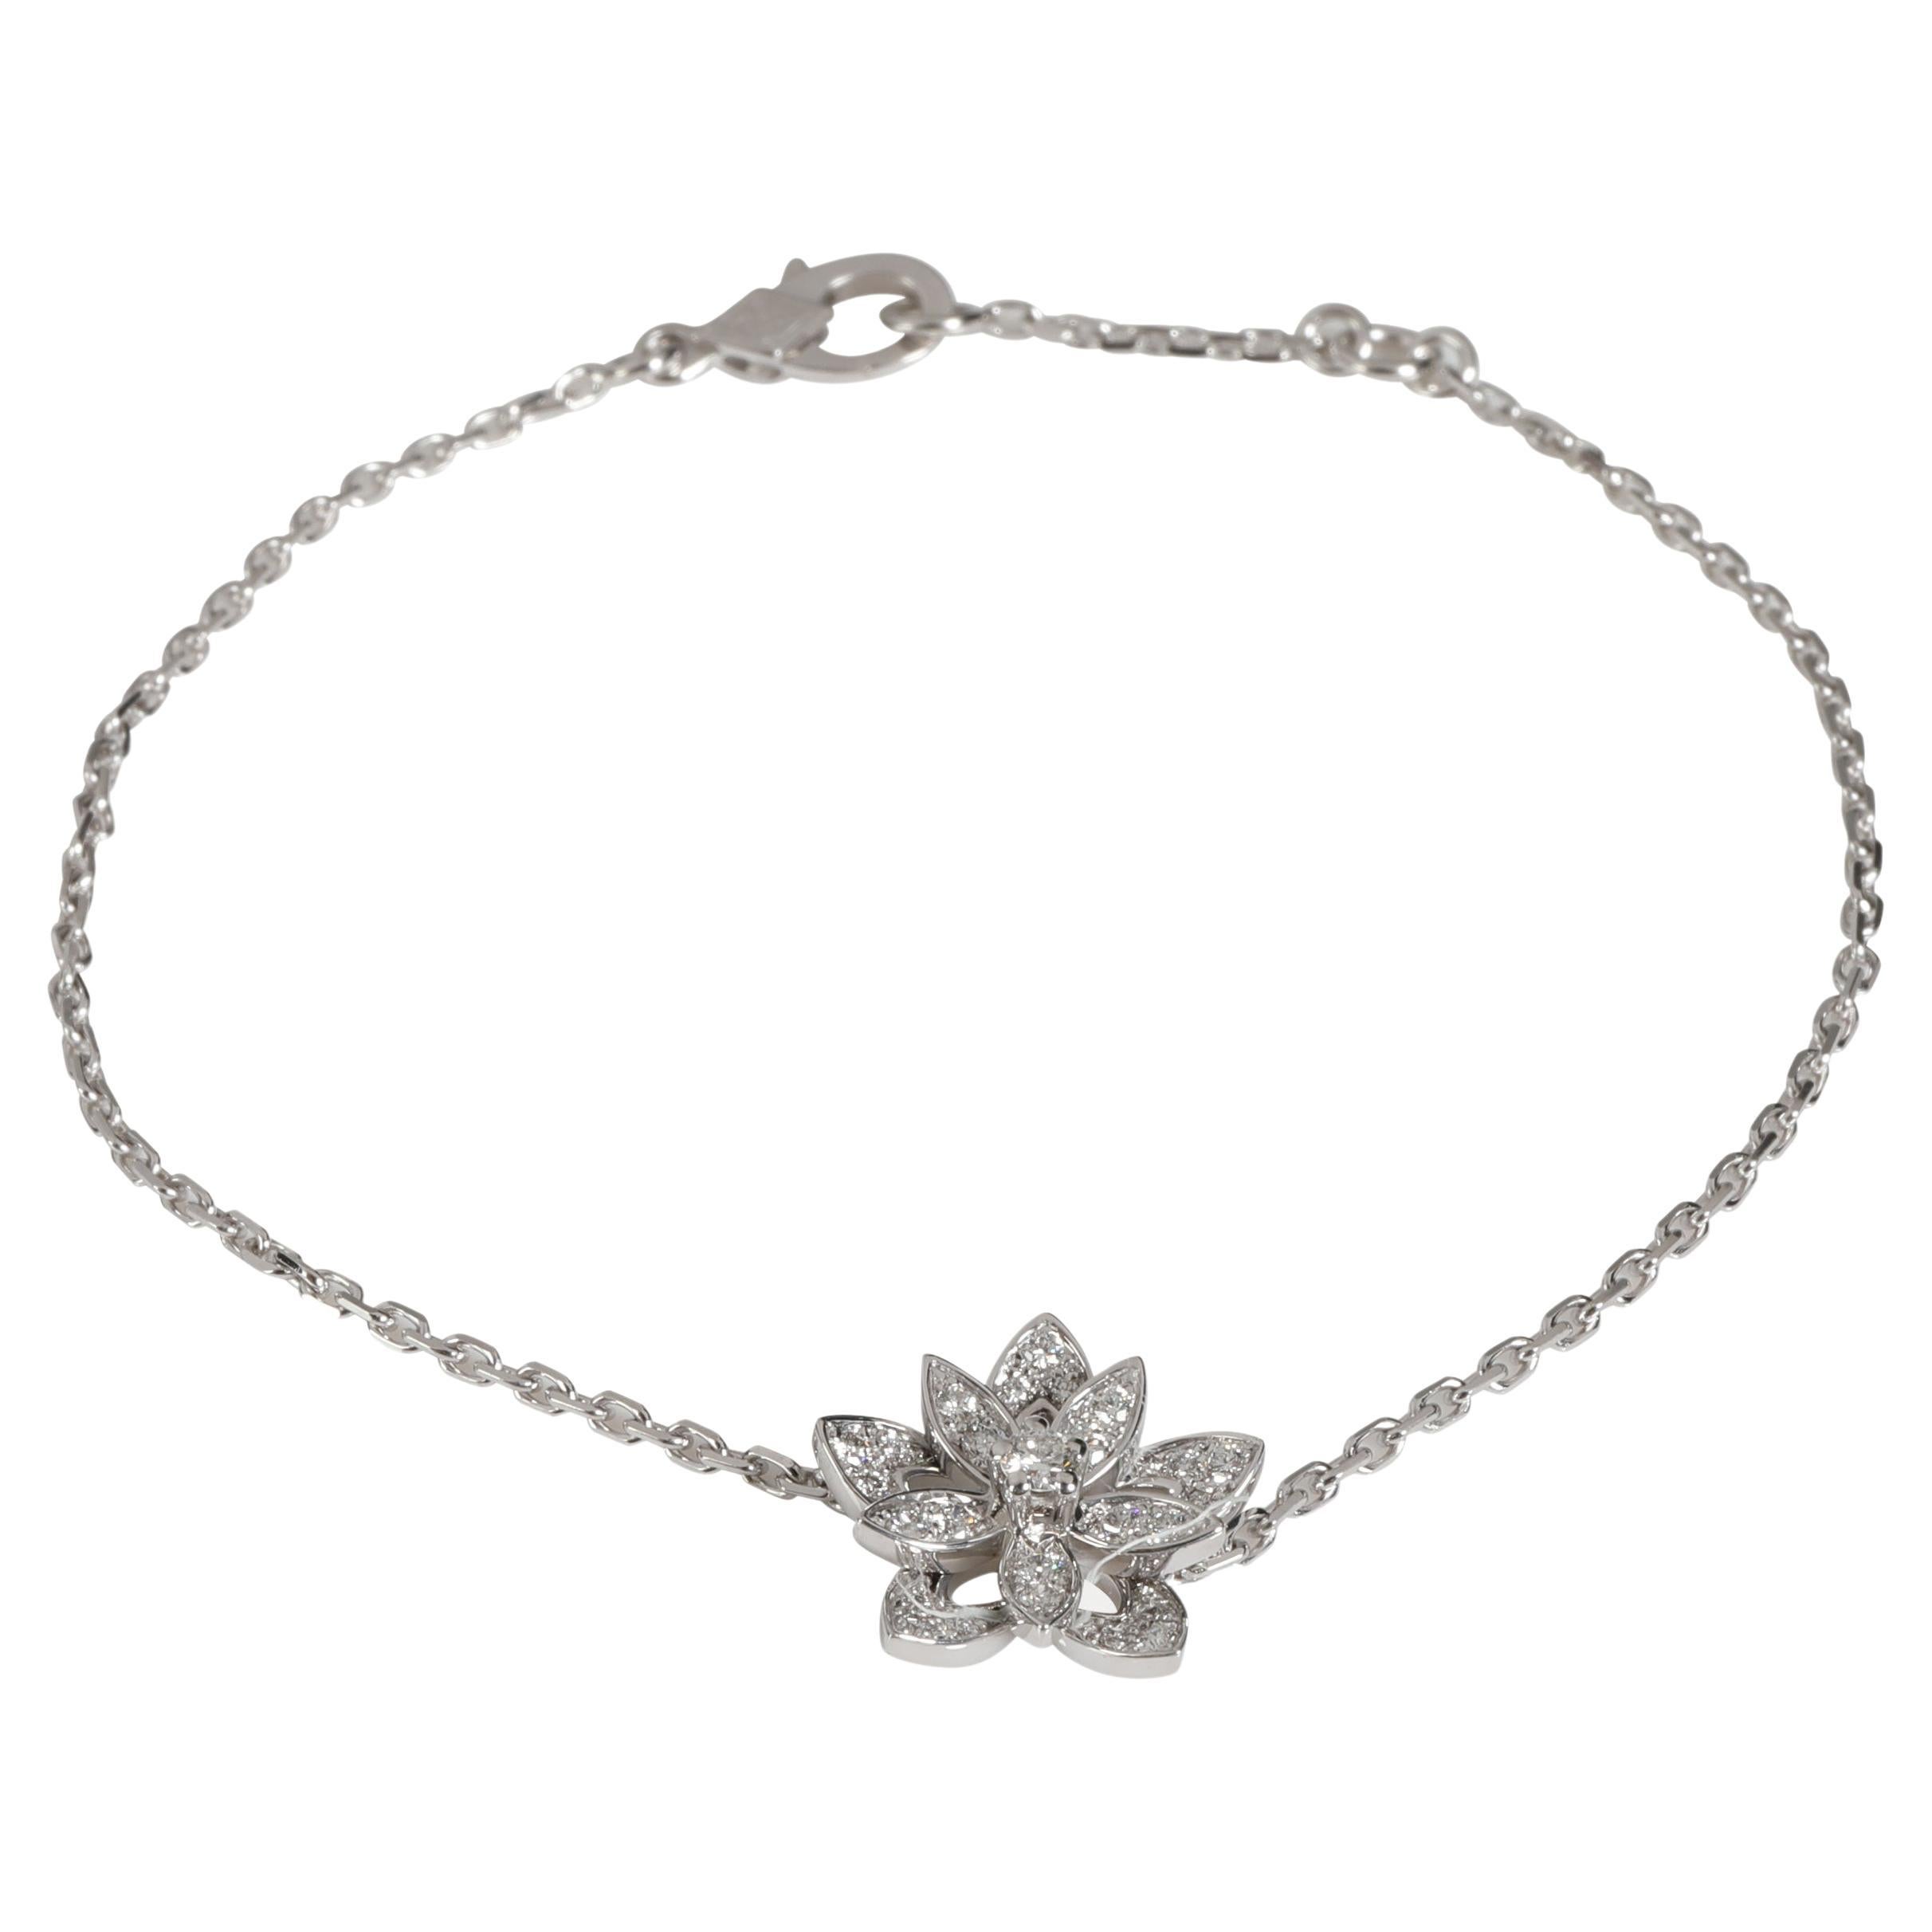 Van Cleef & Arpels Lotus Diamond Bracelet in 18k White Gold 0.16 Ctw